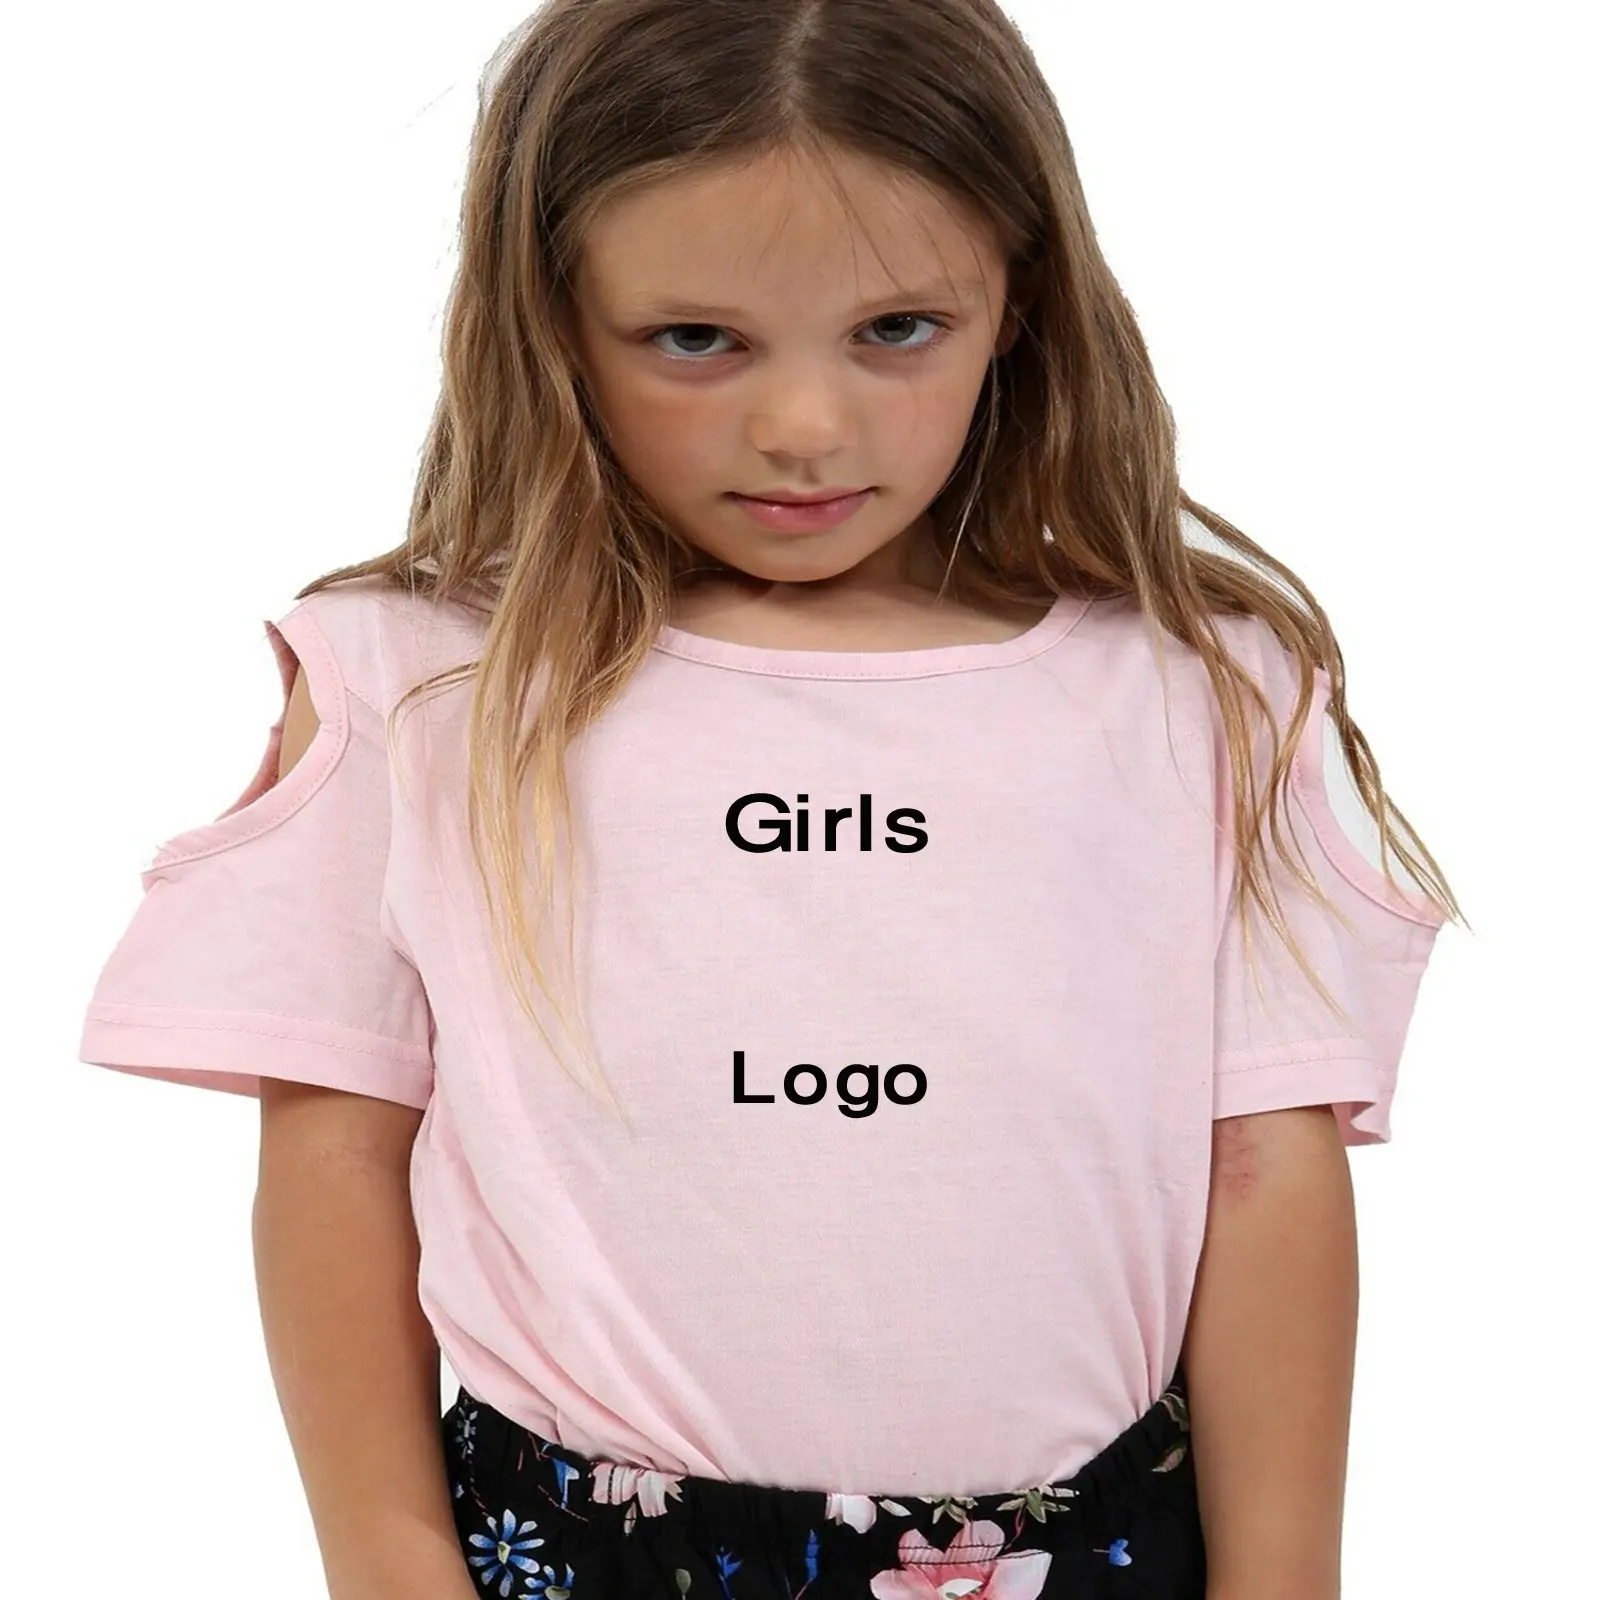 Kızlar t shirt moda giyim çocuk çocuk desen giyim seti bebek kız elbiseler klasik küçük kızlar Tops T-shirt BD